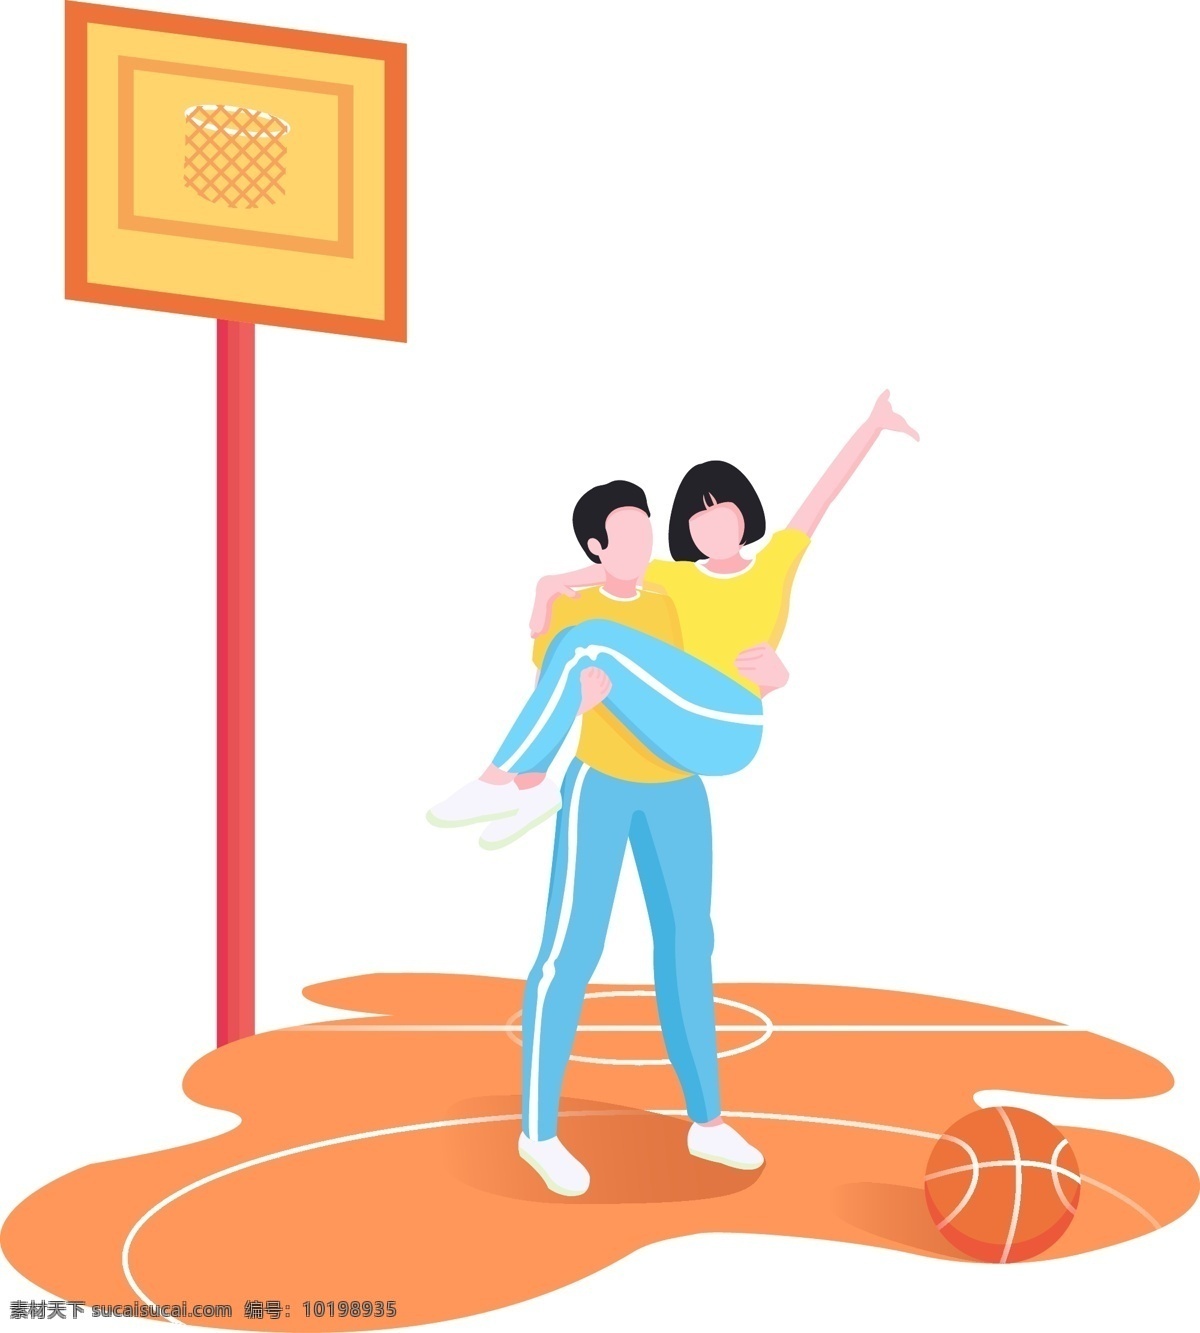 校园 篮球场 公主 抱 姿势 情侣 情人节 设计素材 学生 学校 运动服 七夕 篮球架 公主抱 短发